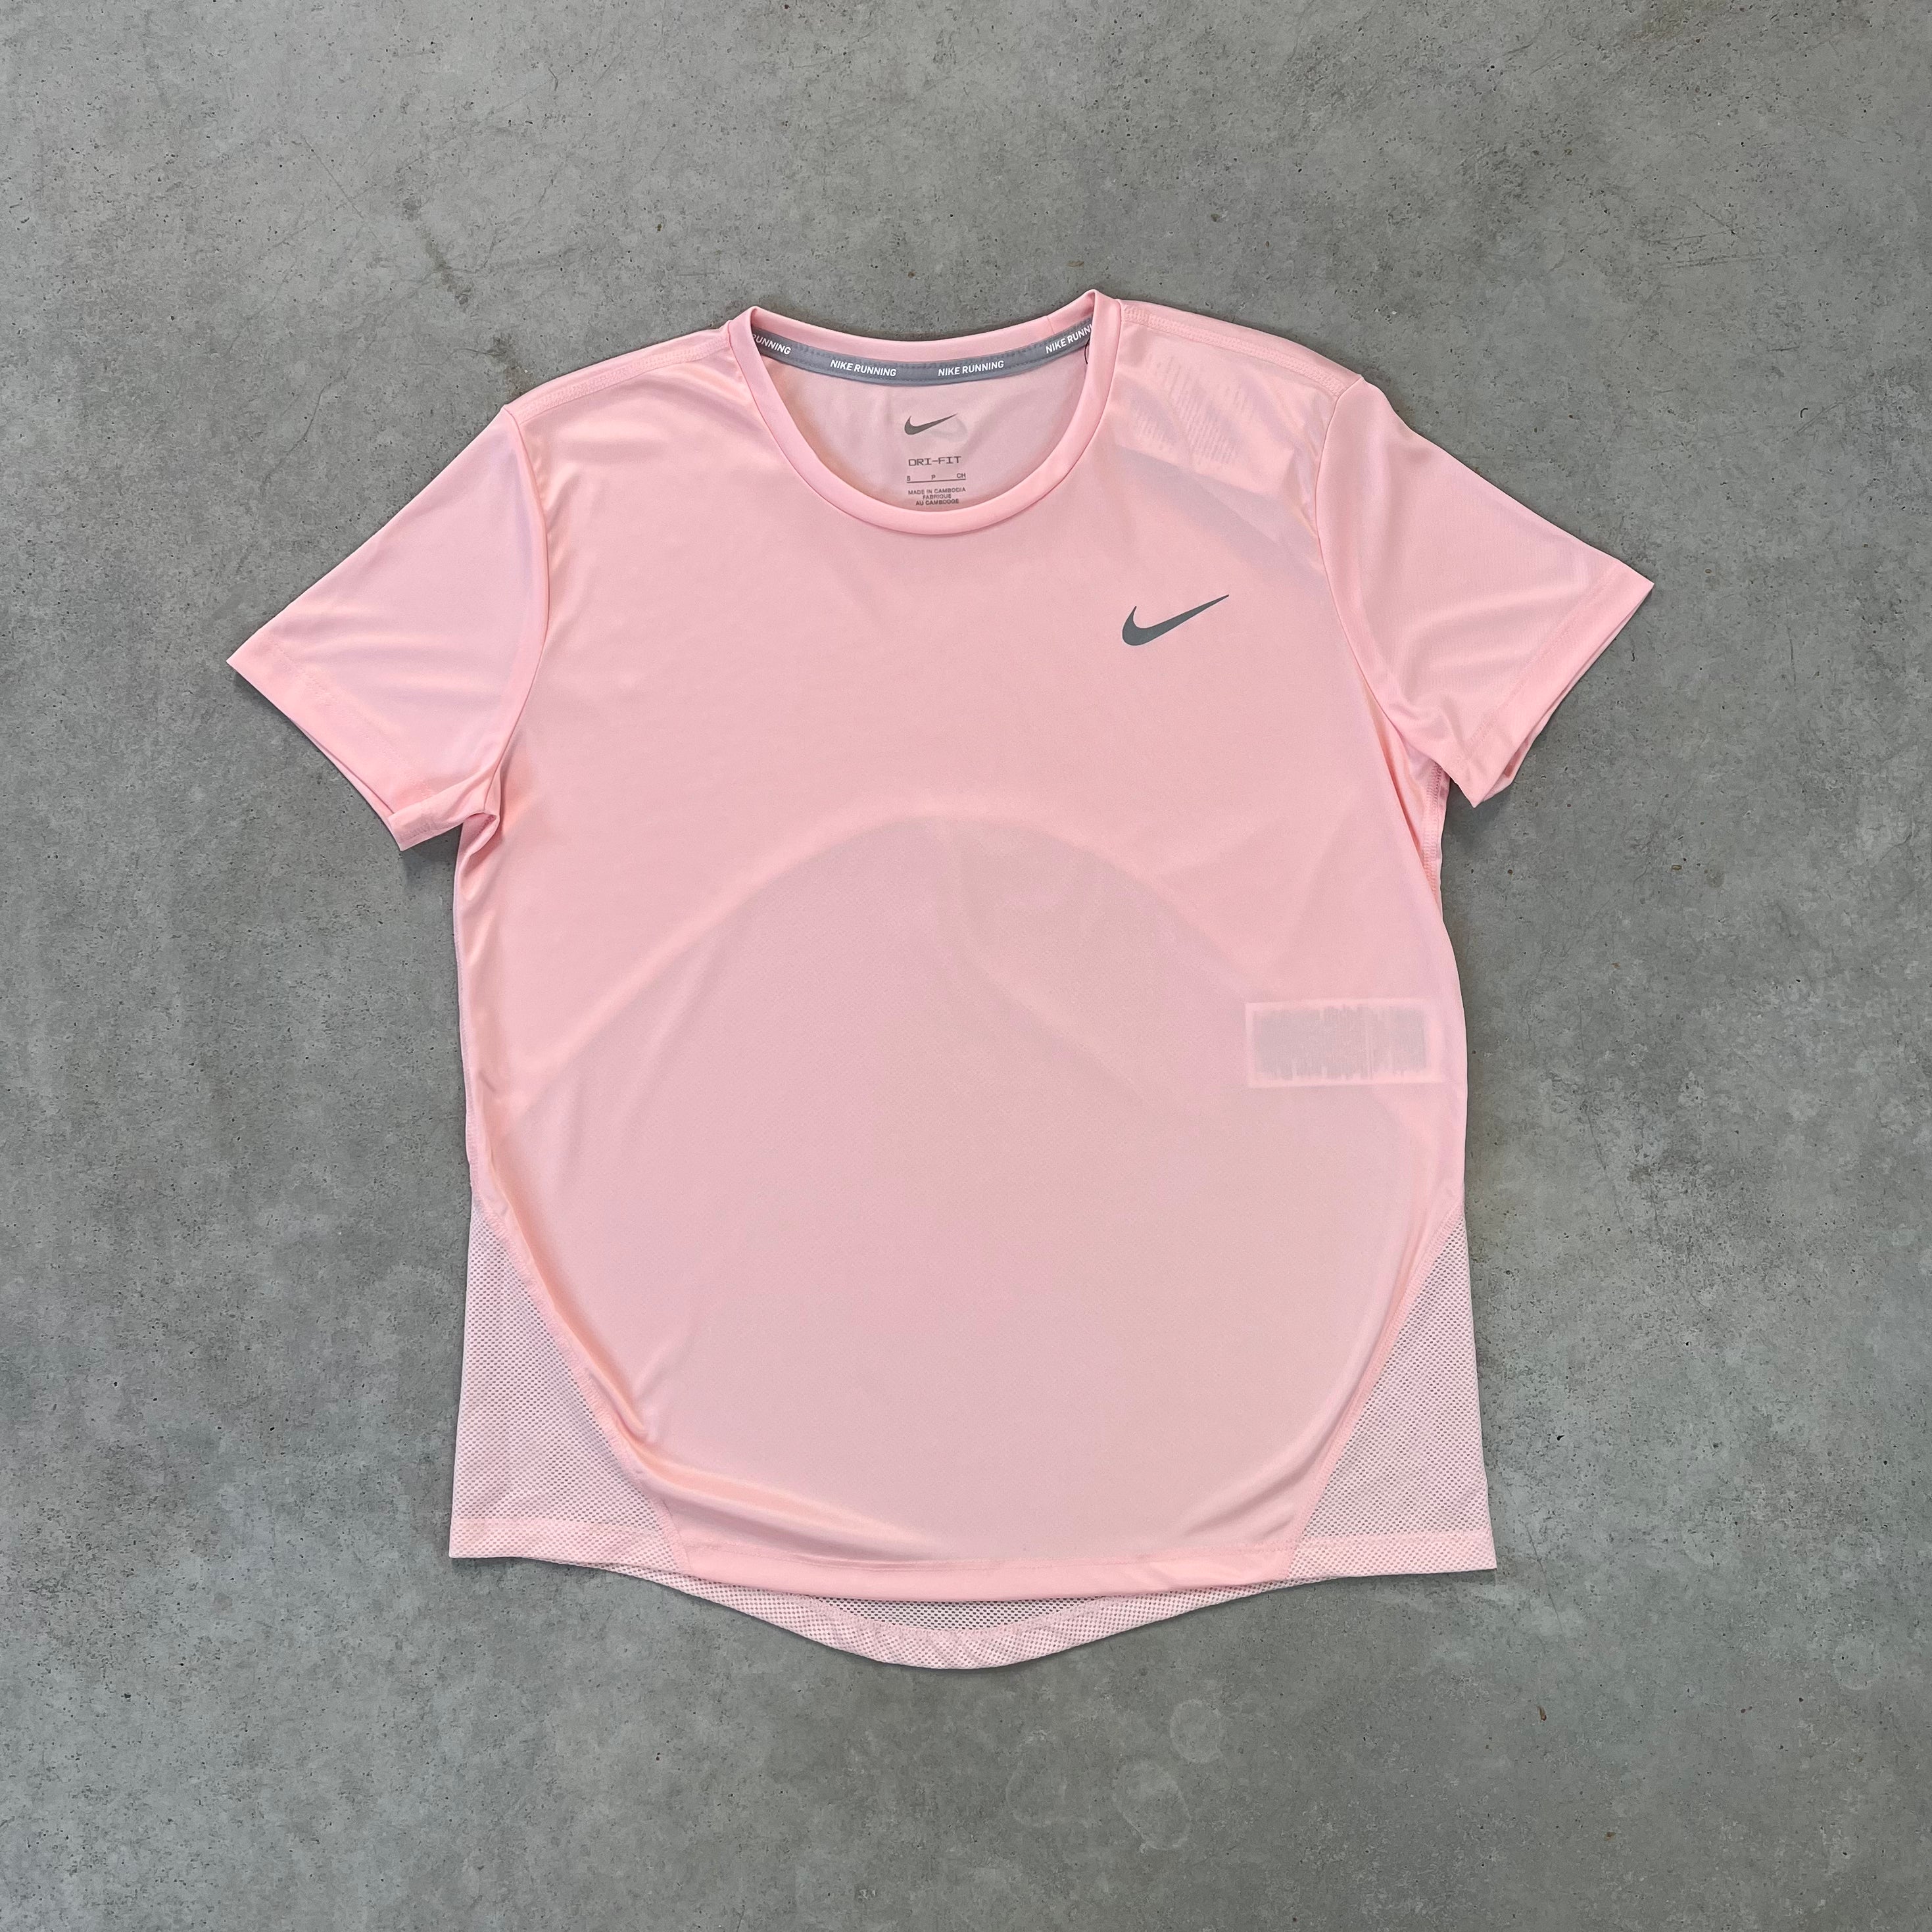 FEMULA Monika T-Shirt Lightly Padded Bra for Women & Girls ( Pack of 2Pcs,  1 Each of Maroon & Pink Colour )